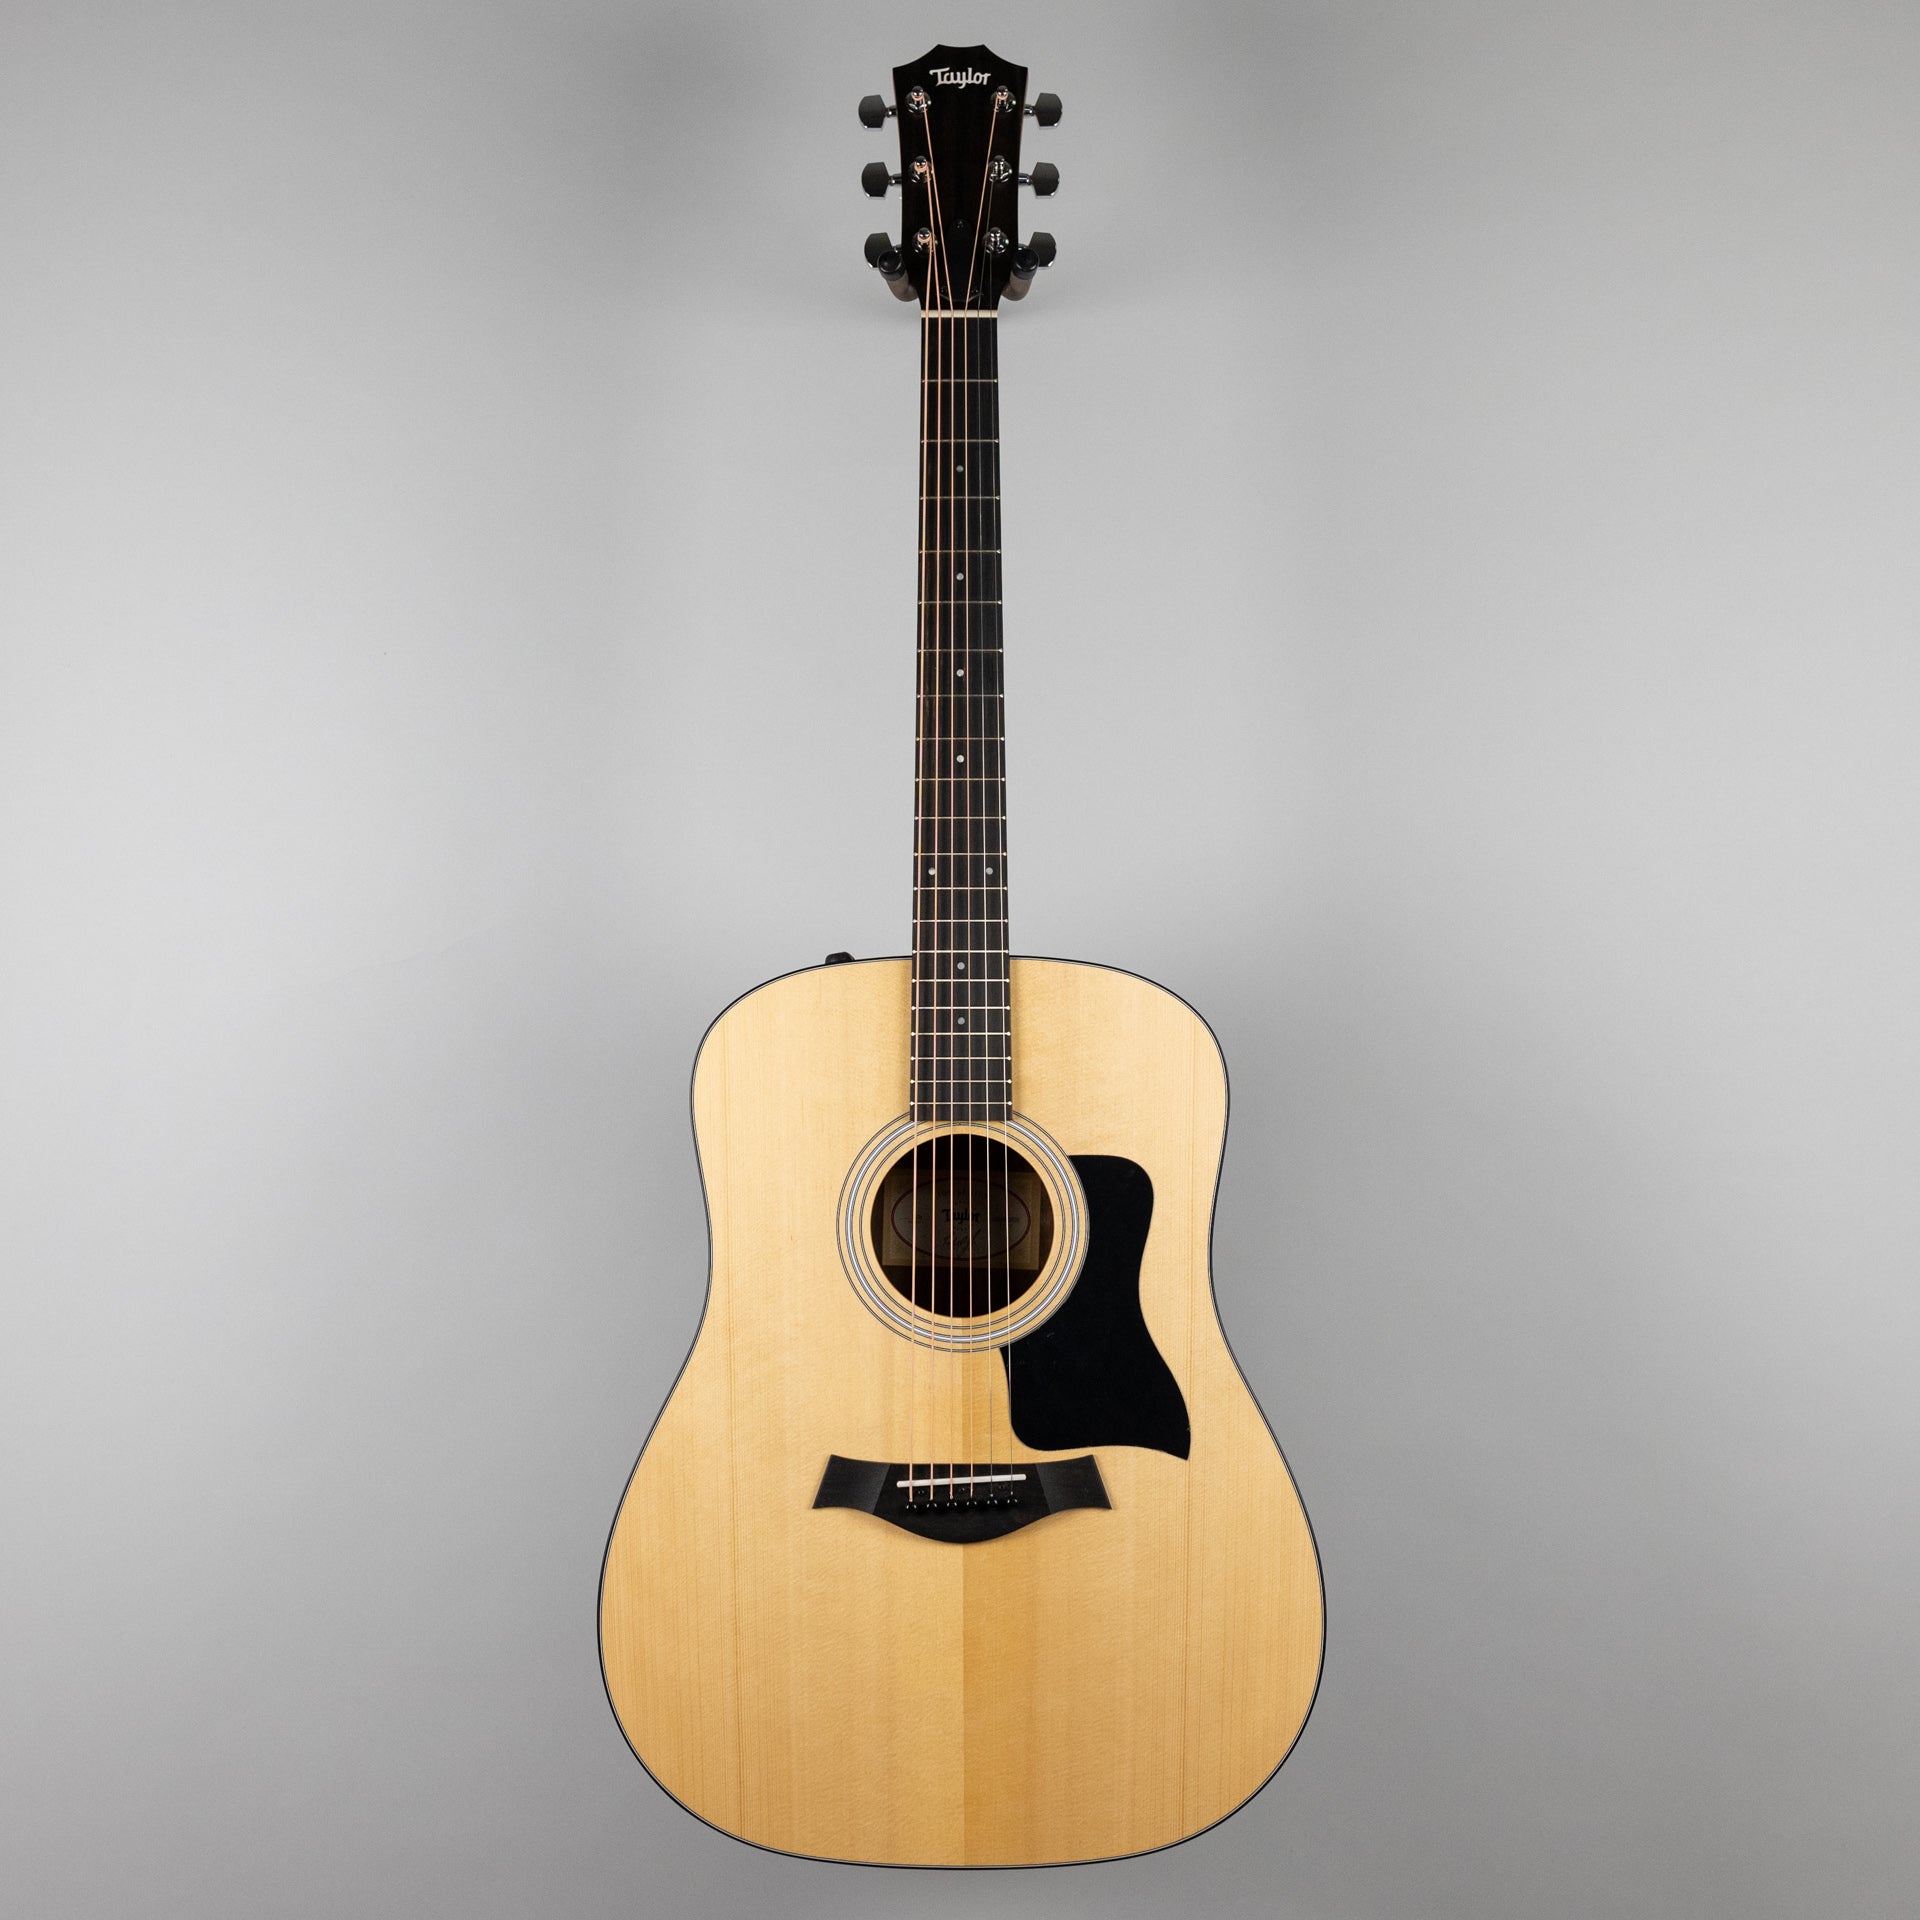 Taylor 110 アコースティックギター(エレアコではありません) - 楽器/器材